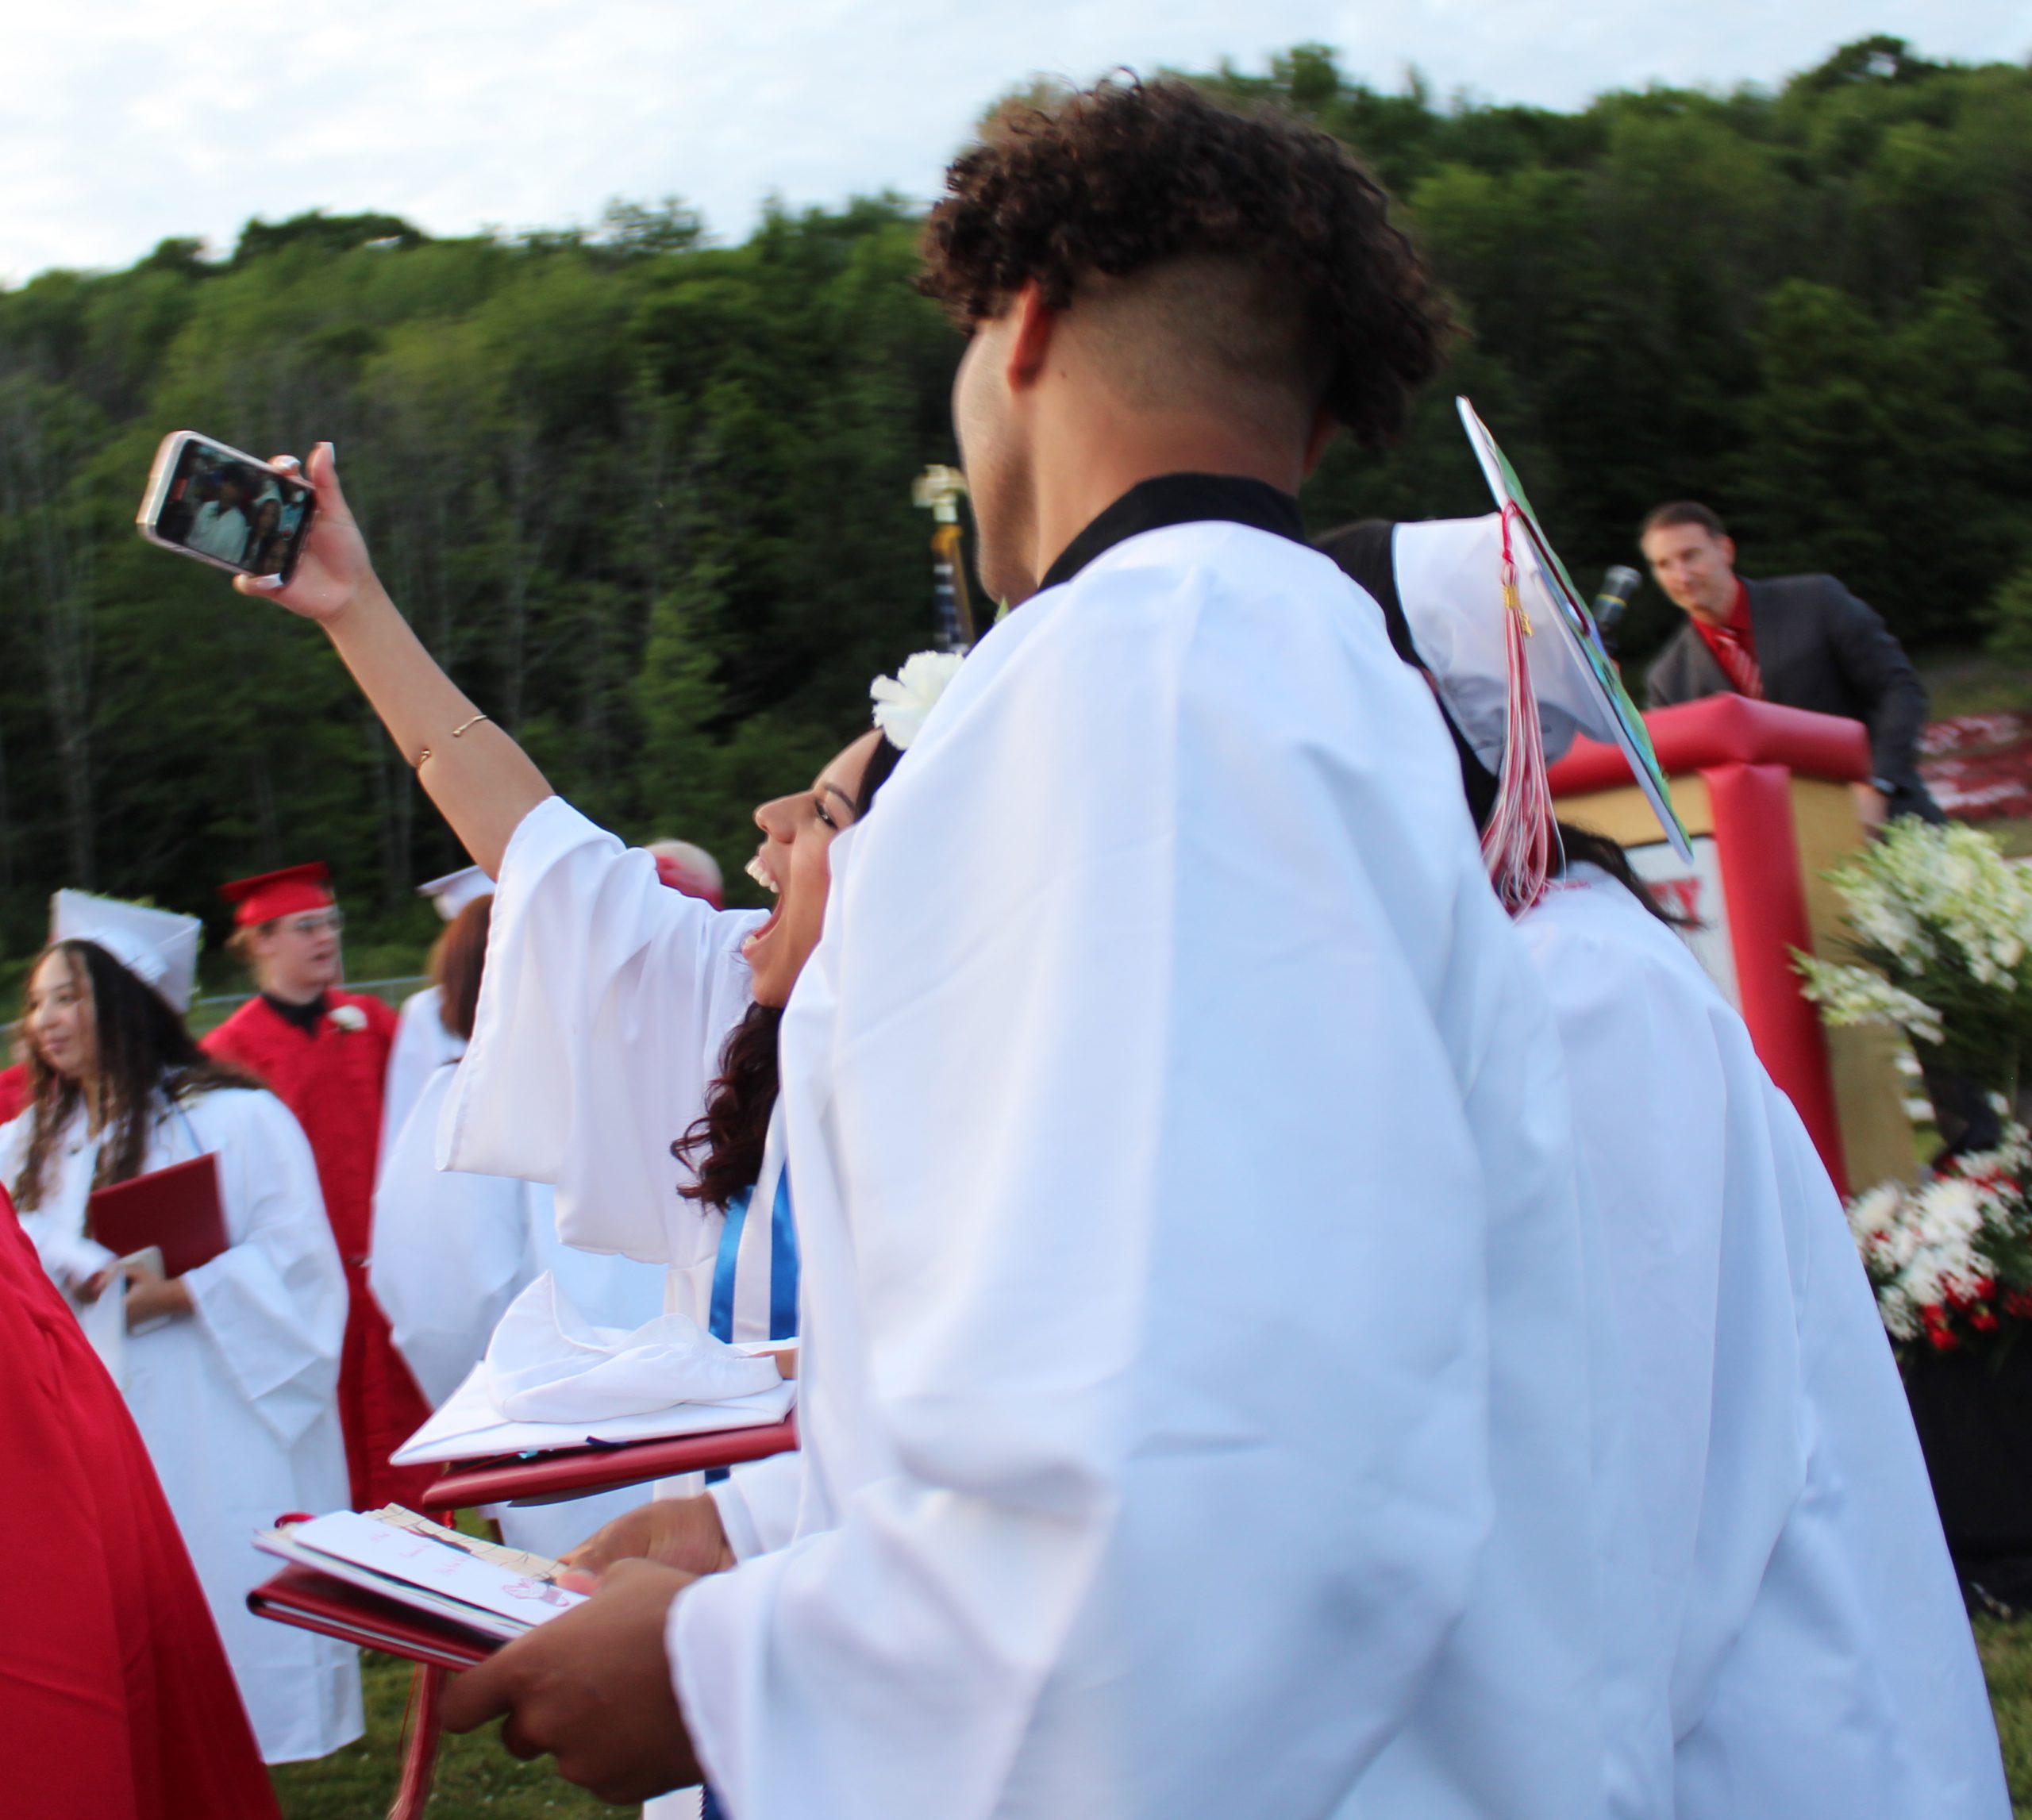 Two graduates take a selfie